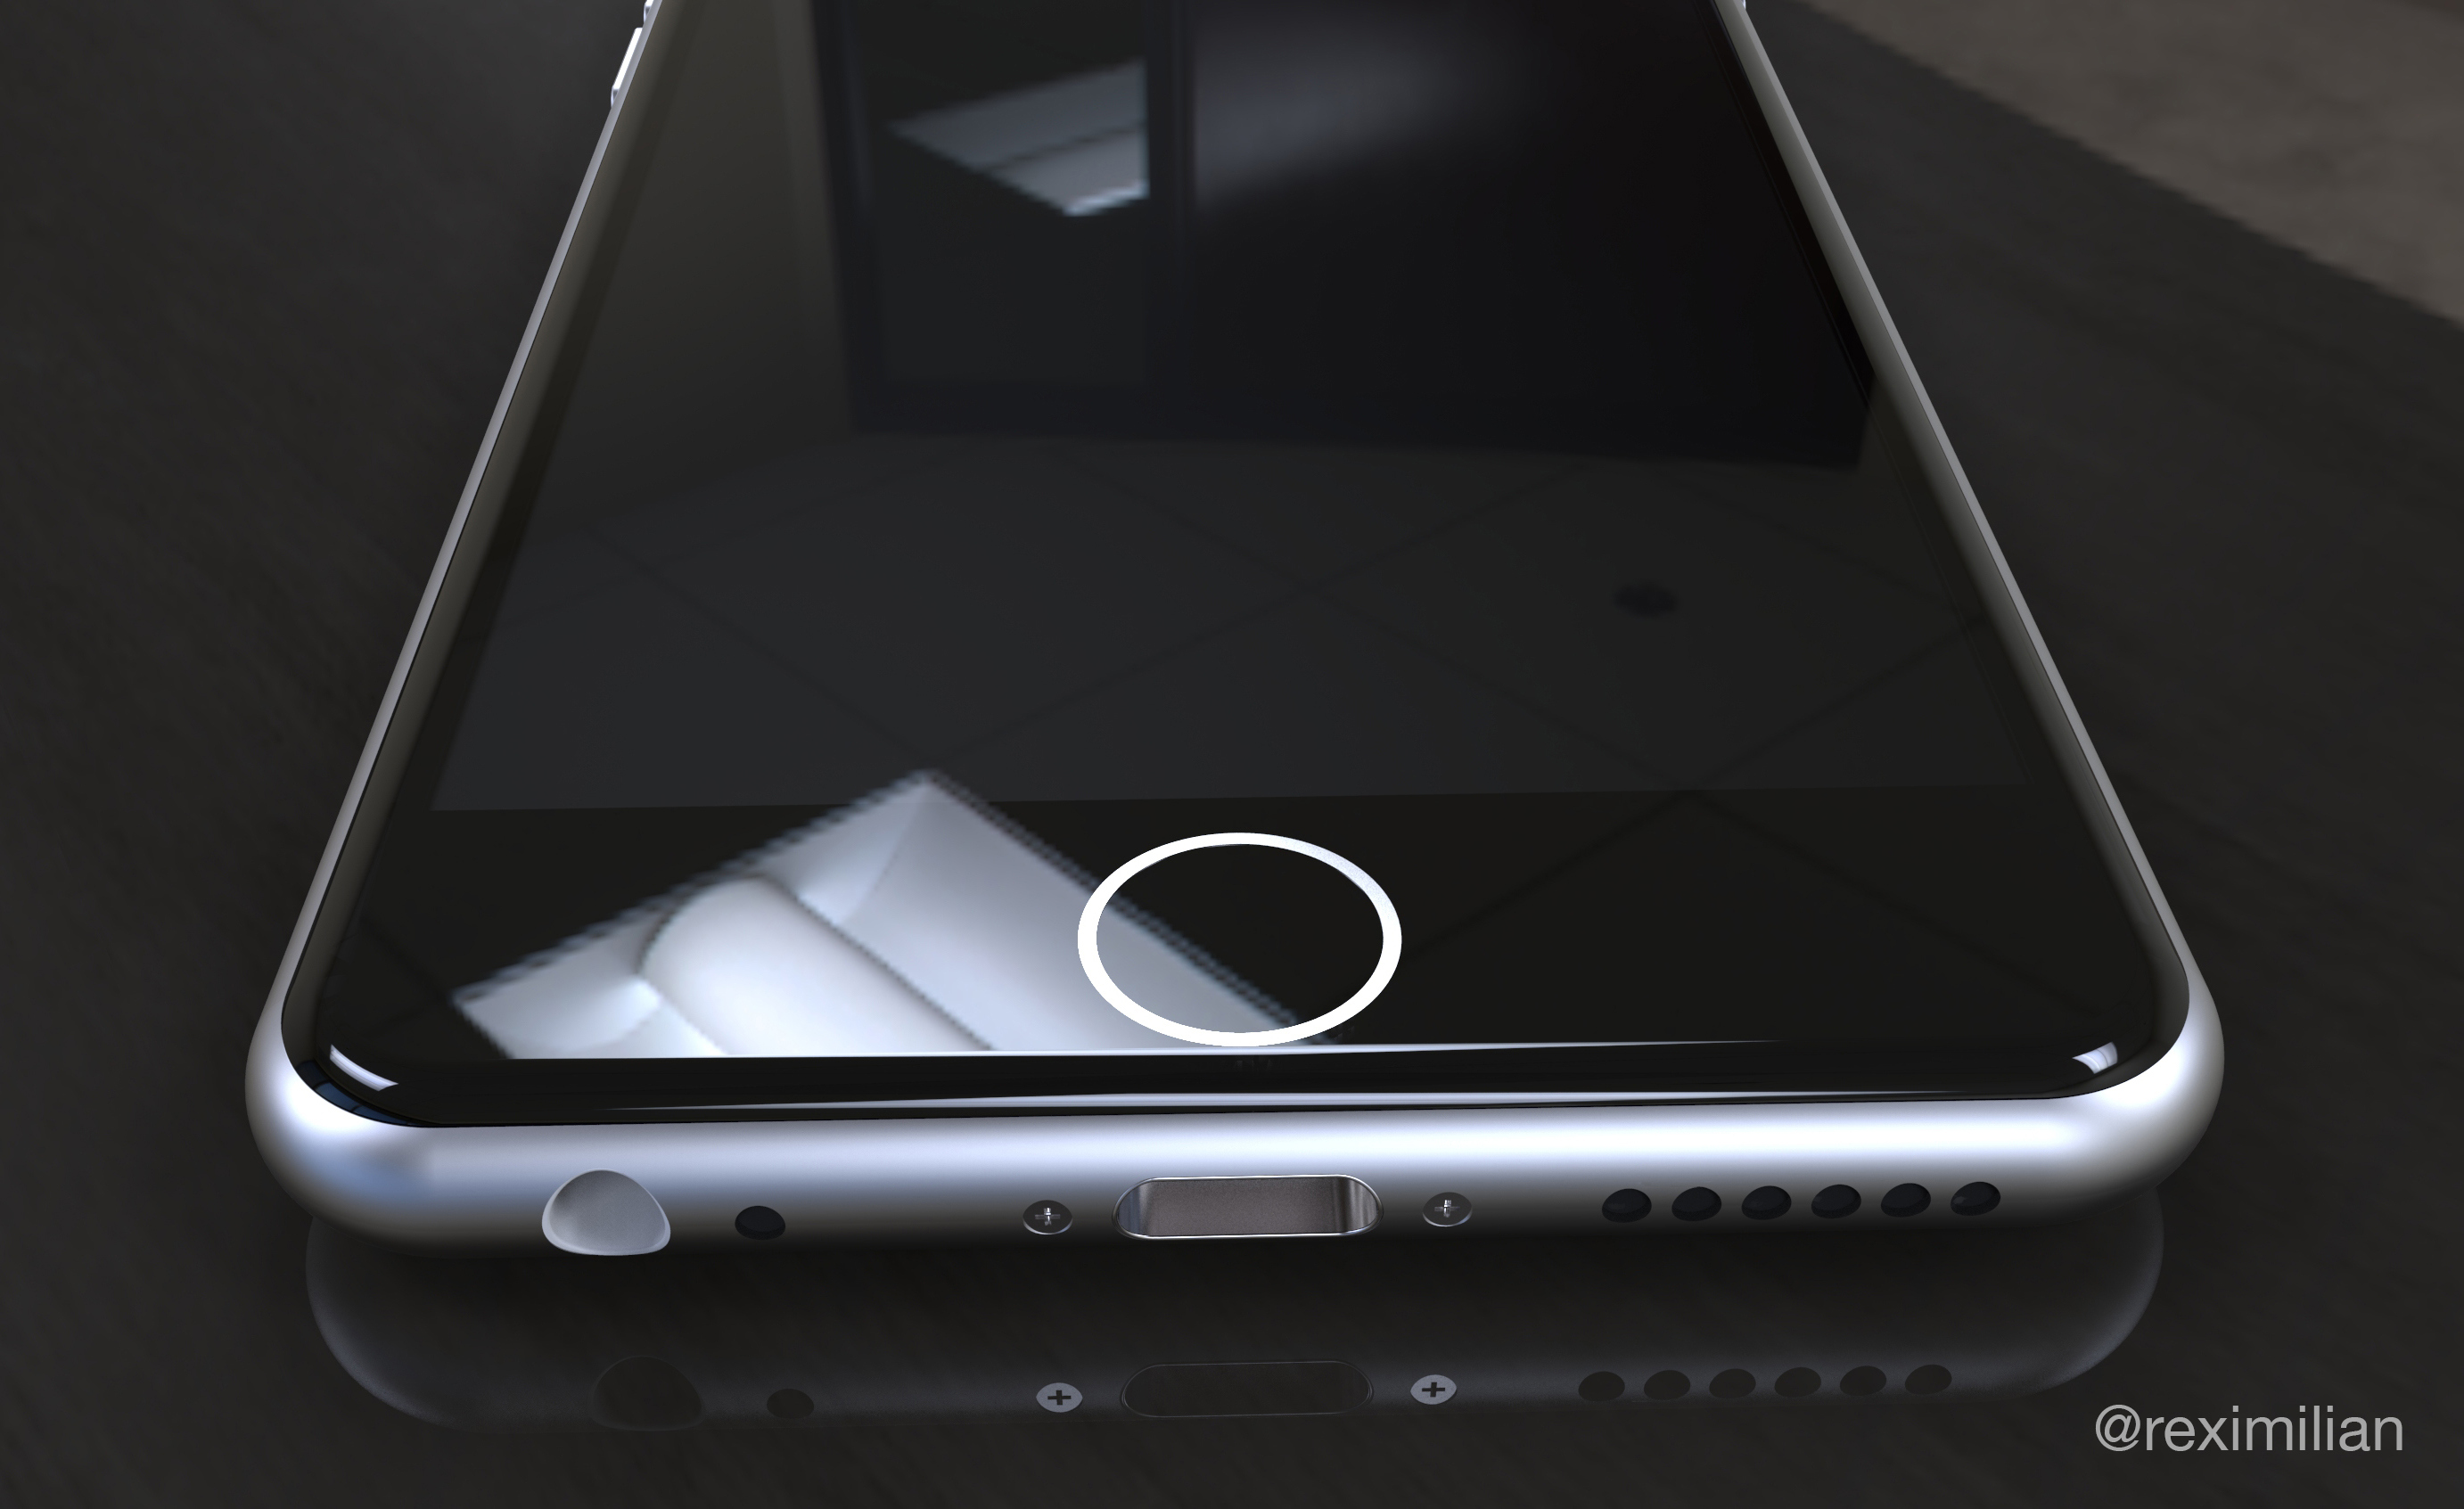 Botón táctil del iPhone 7 3D Touch